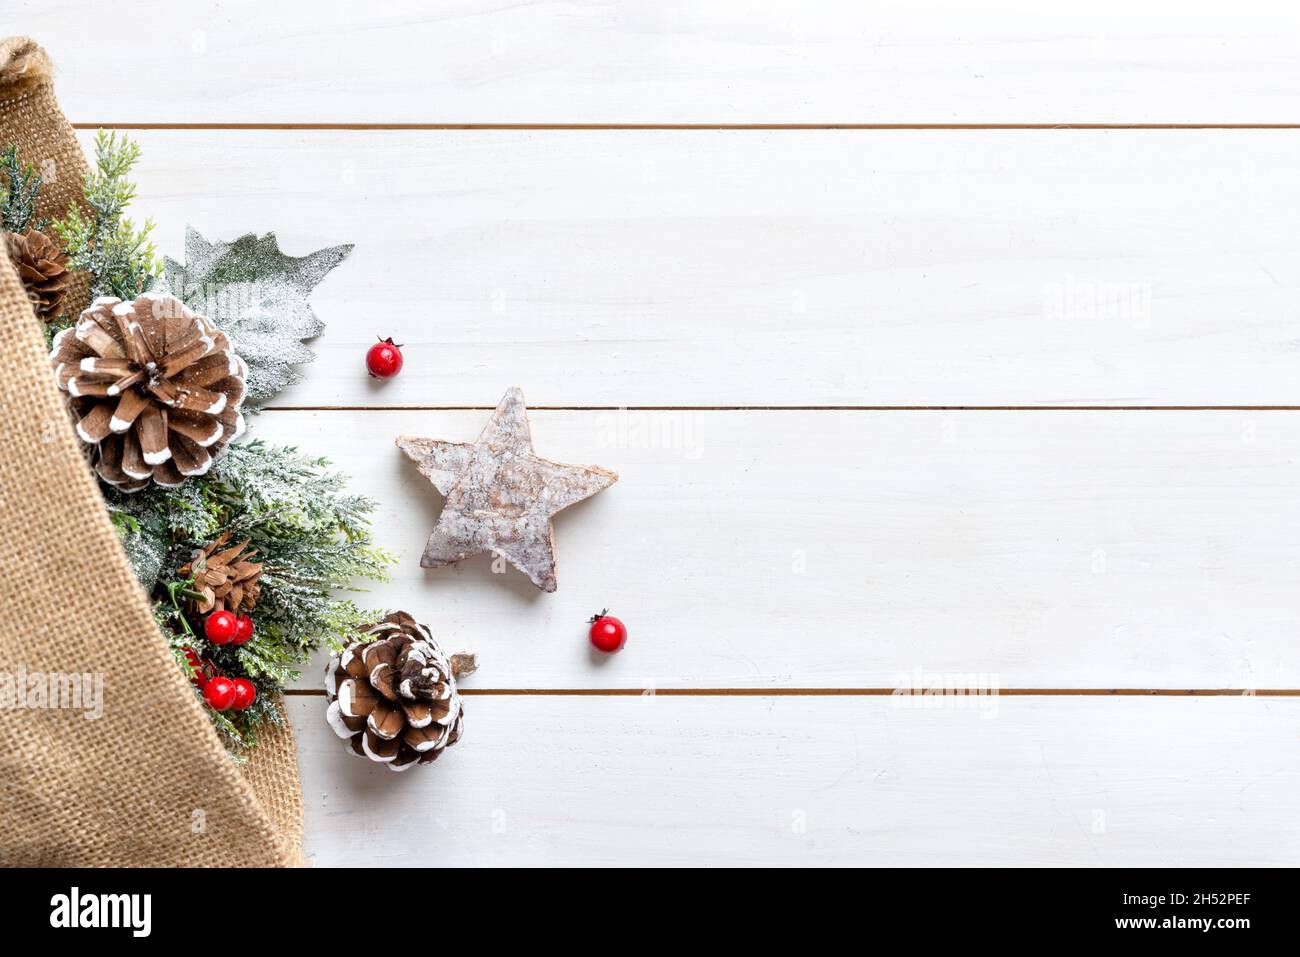 Composition de Noël sur une table en bois blanc avec un sac de décorations sortir.Espace libre à côté du texte de message d'accueil Banque D'Images